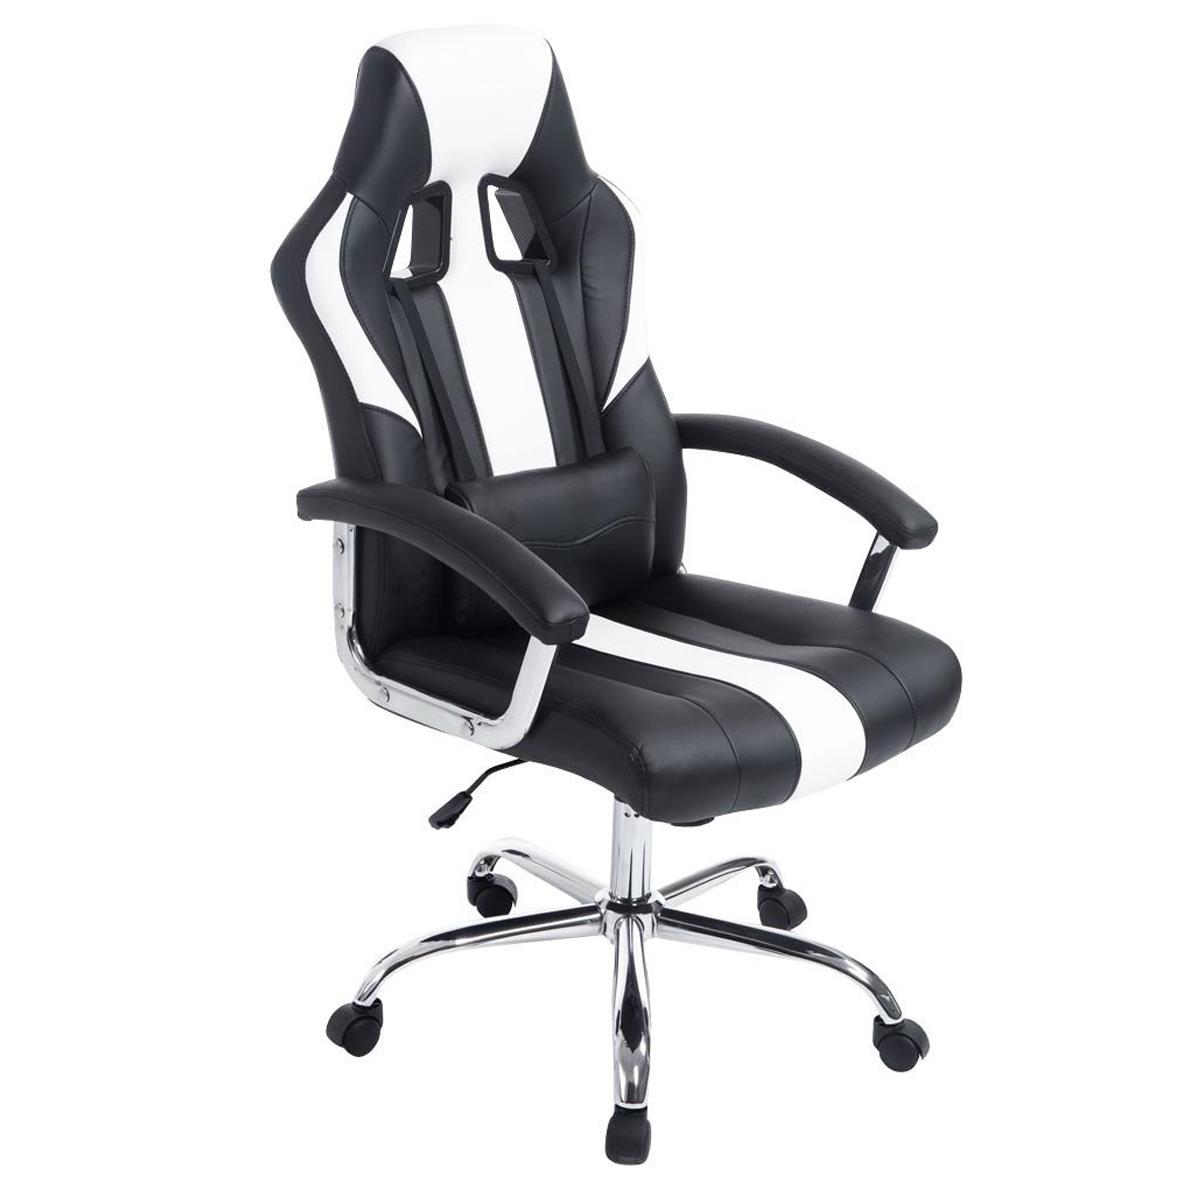 Gaming-Stuhl INDOS, sportliches Design, hoher Komfort, Metallfußkreuz, Lederbezug, Farbe Schwarz /Weiß